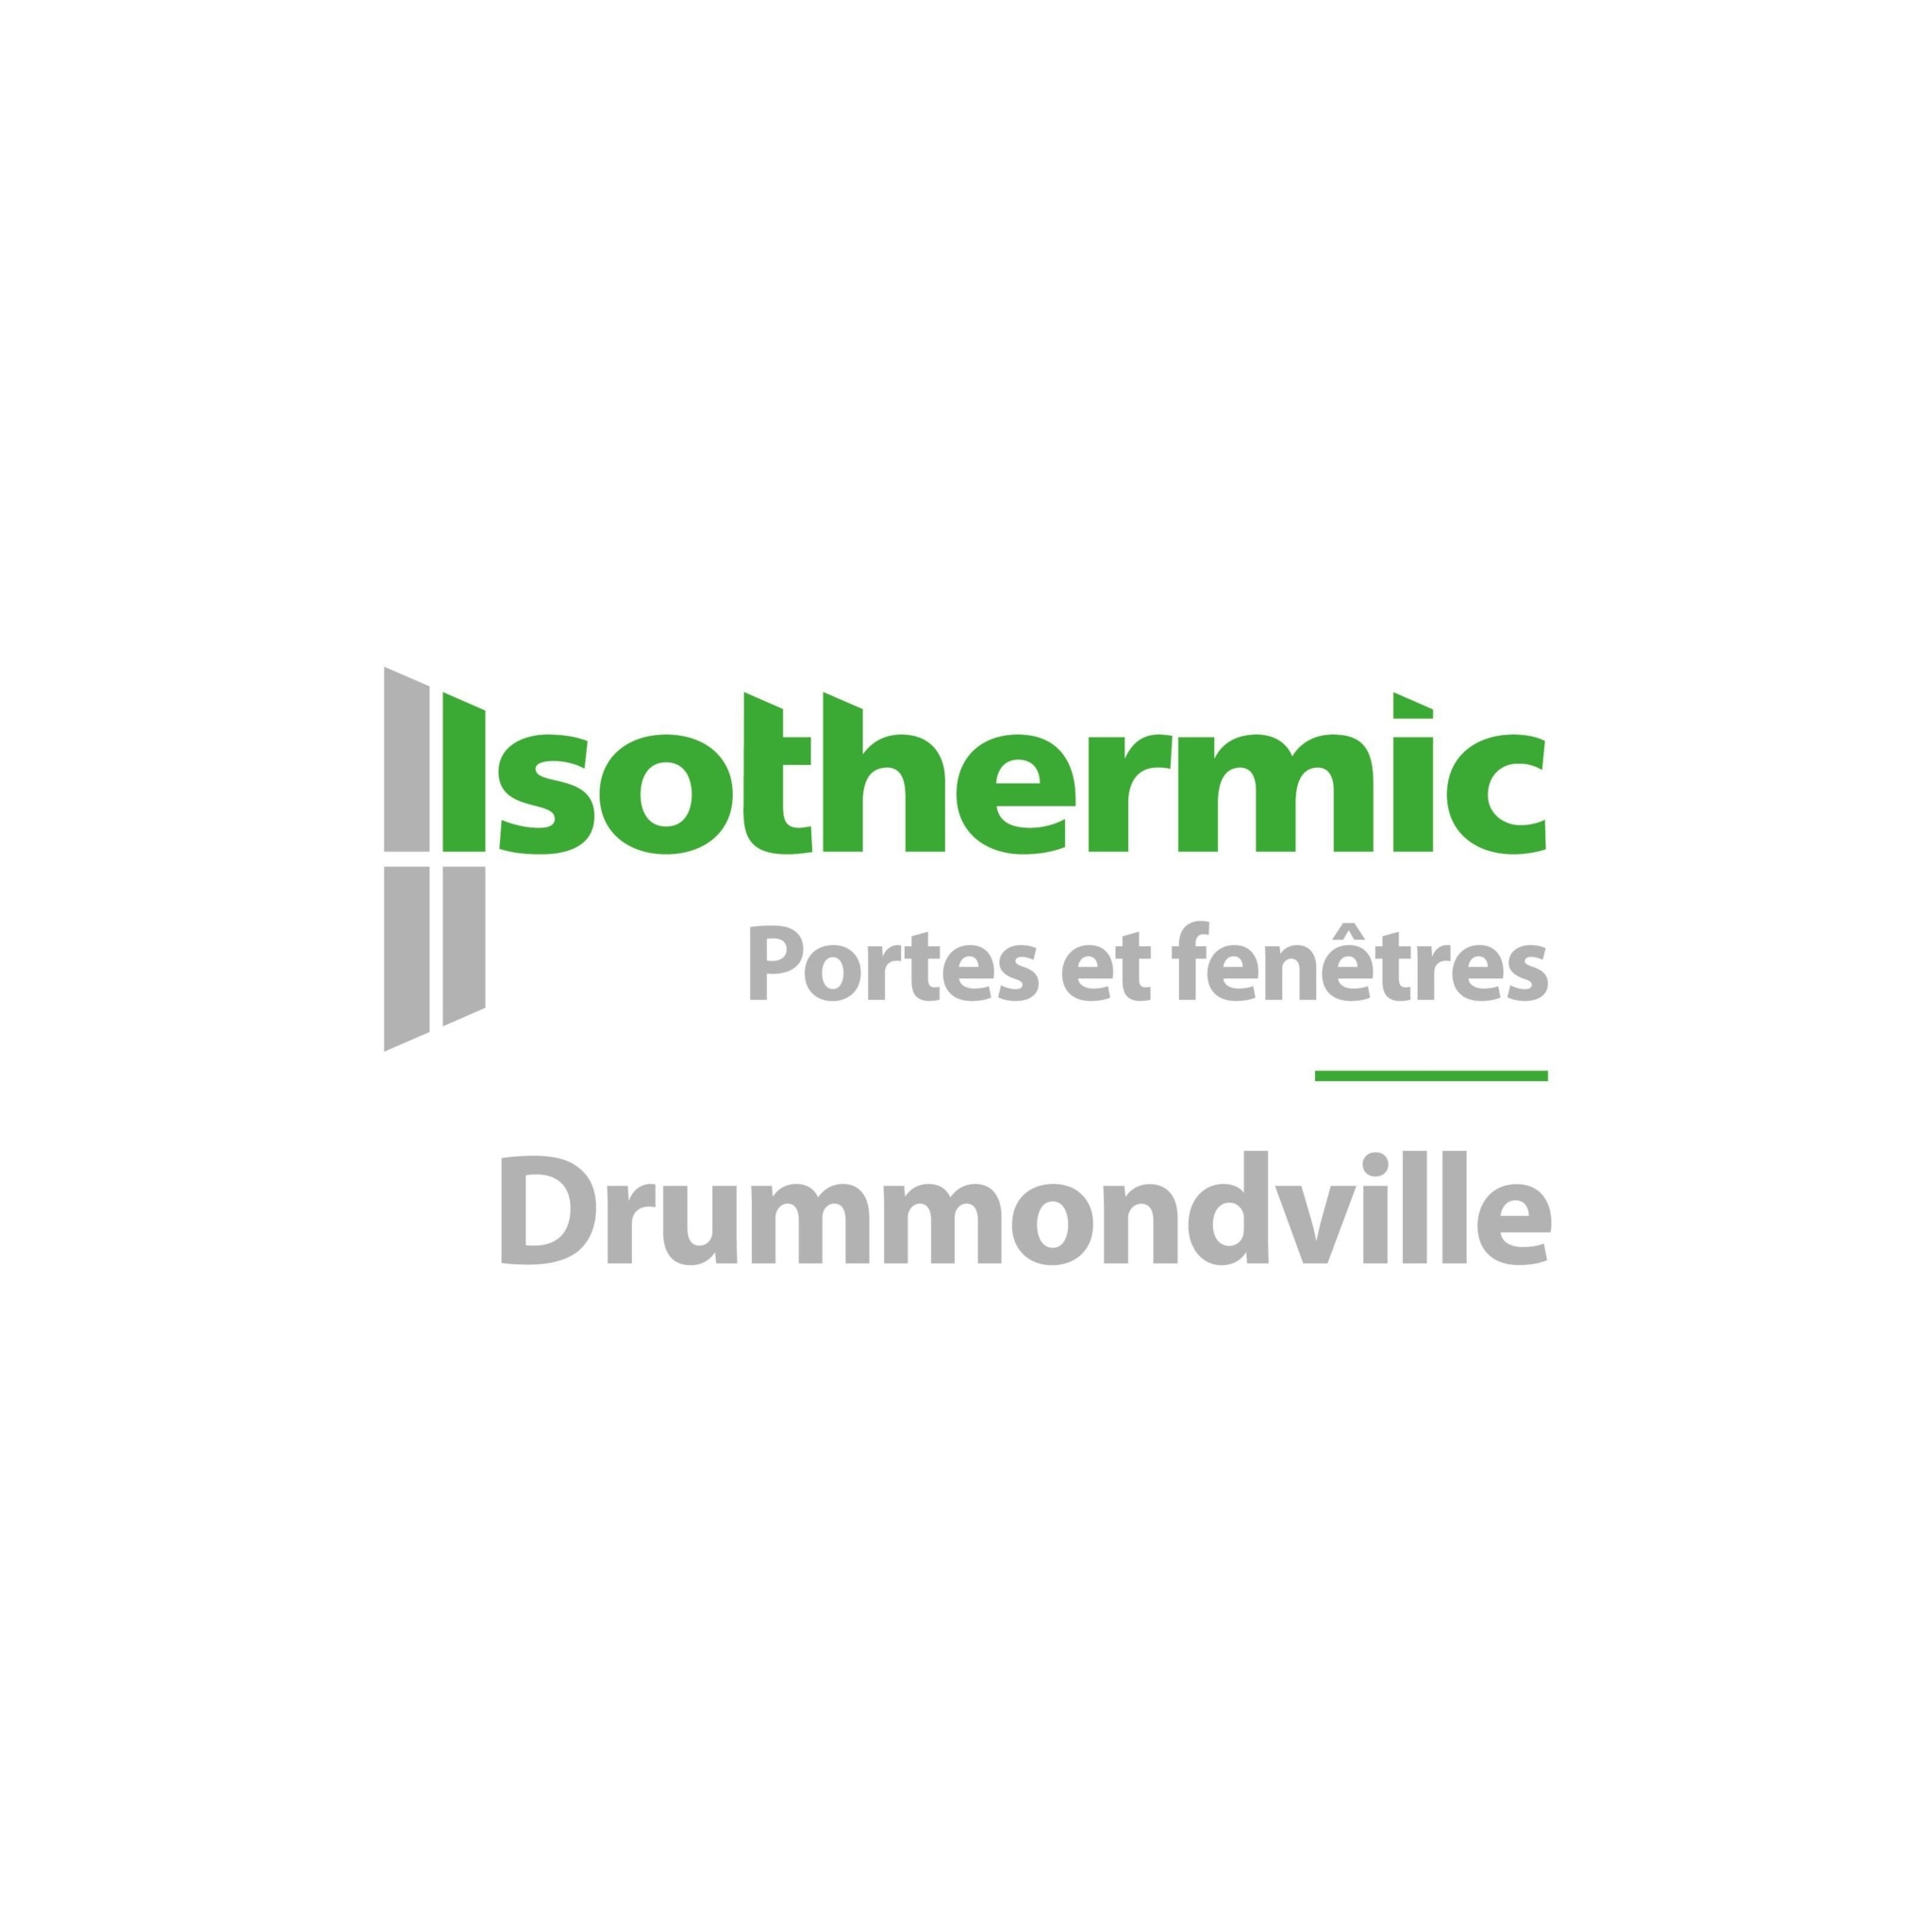 Isothermic portes et fenêtres | Drummondville - Fenêtres